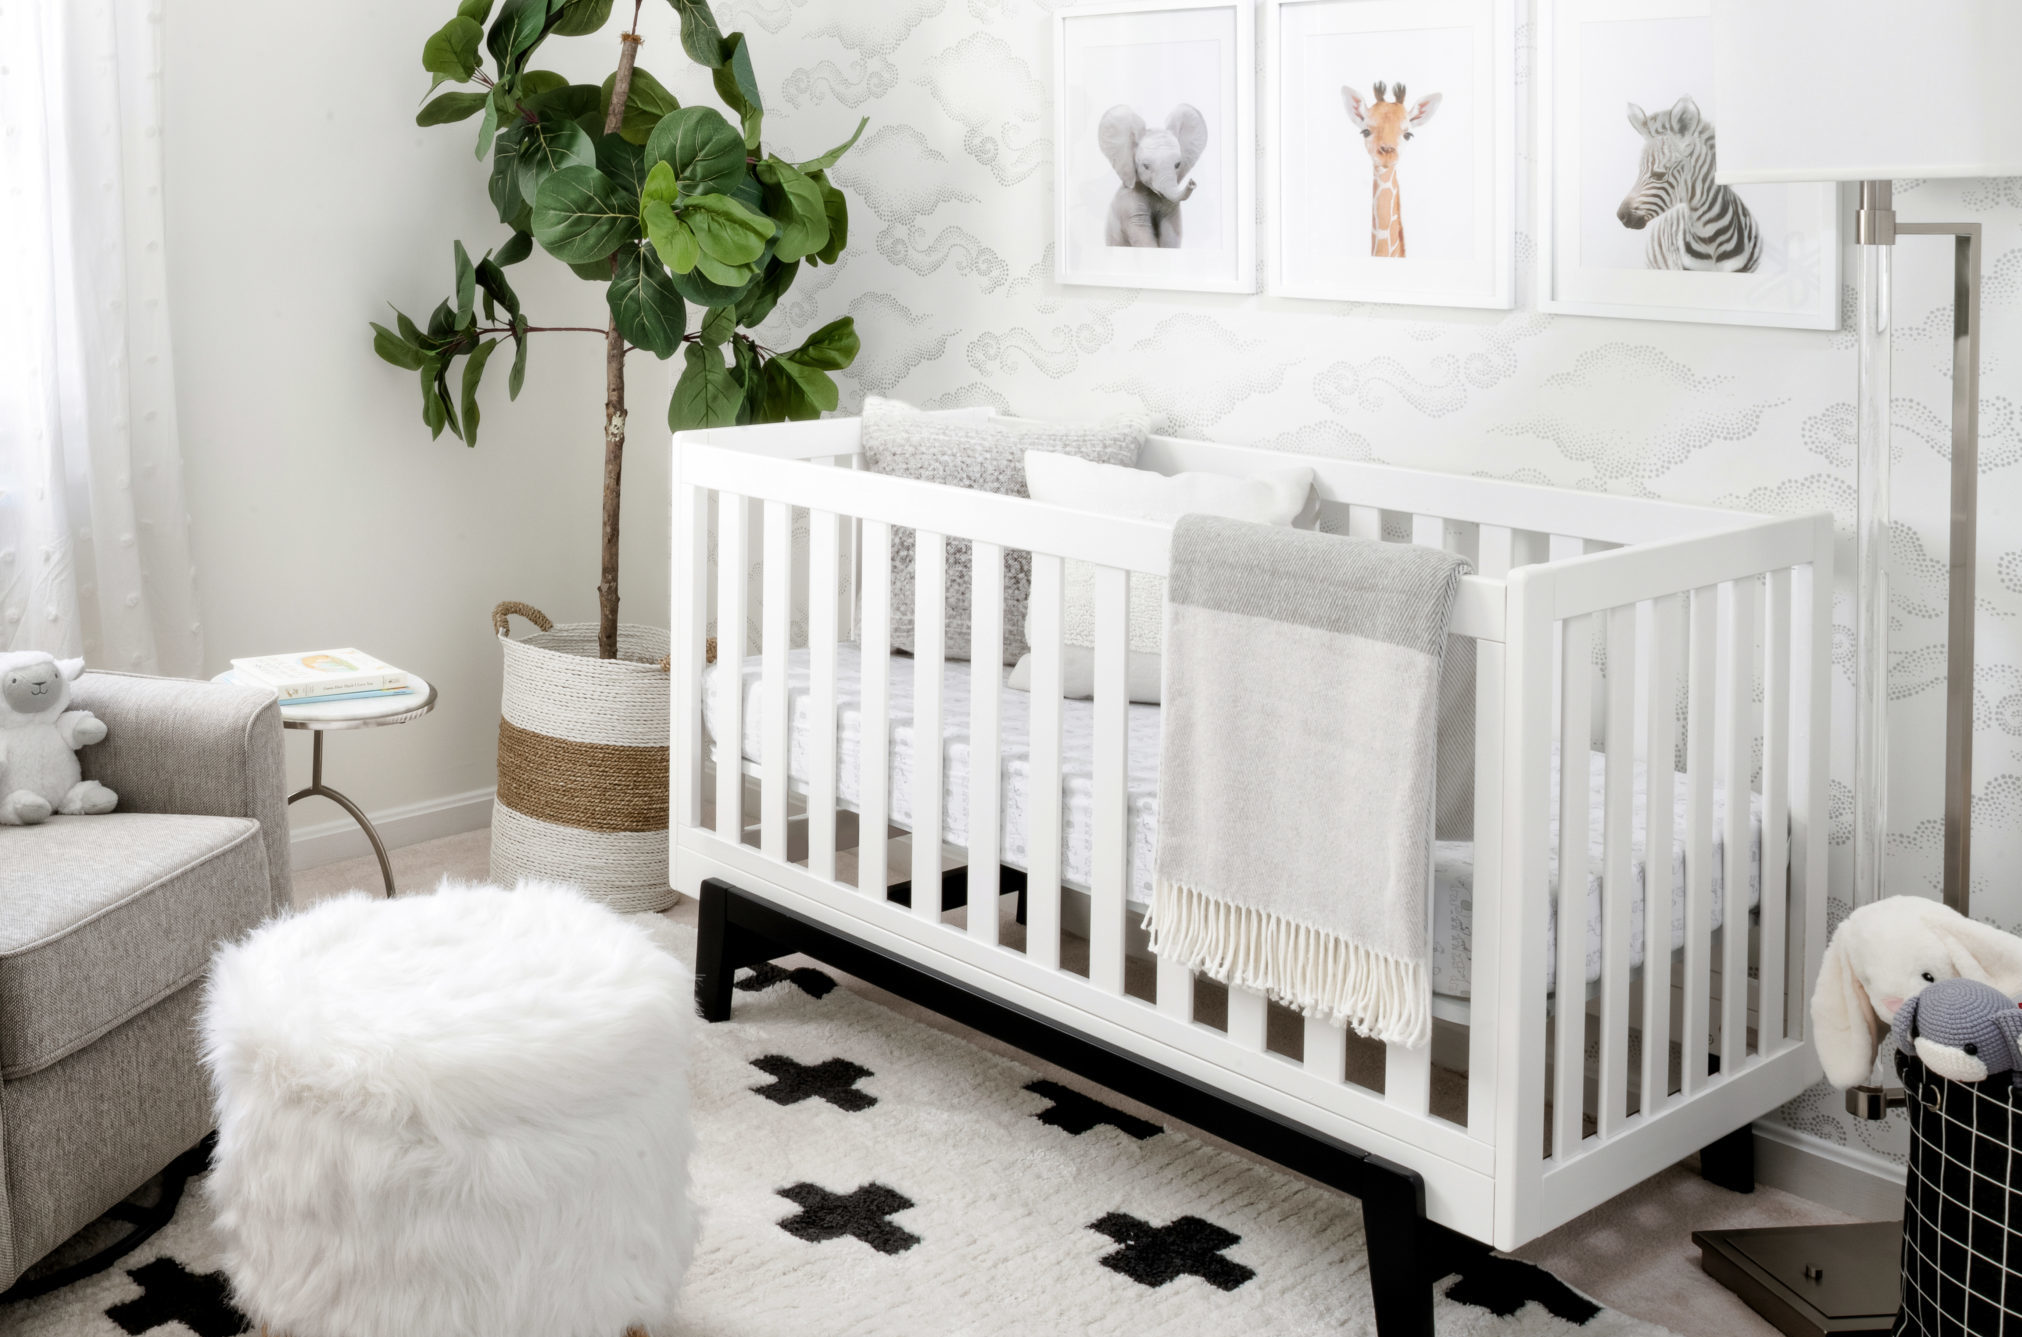 Nursery Decor Ideas for Your Baby’s Room